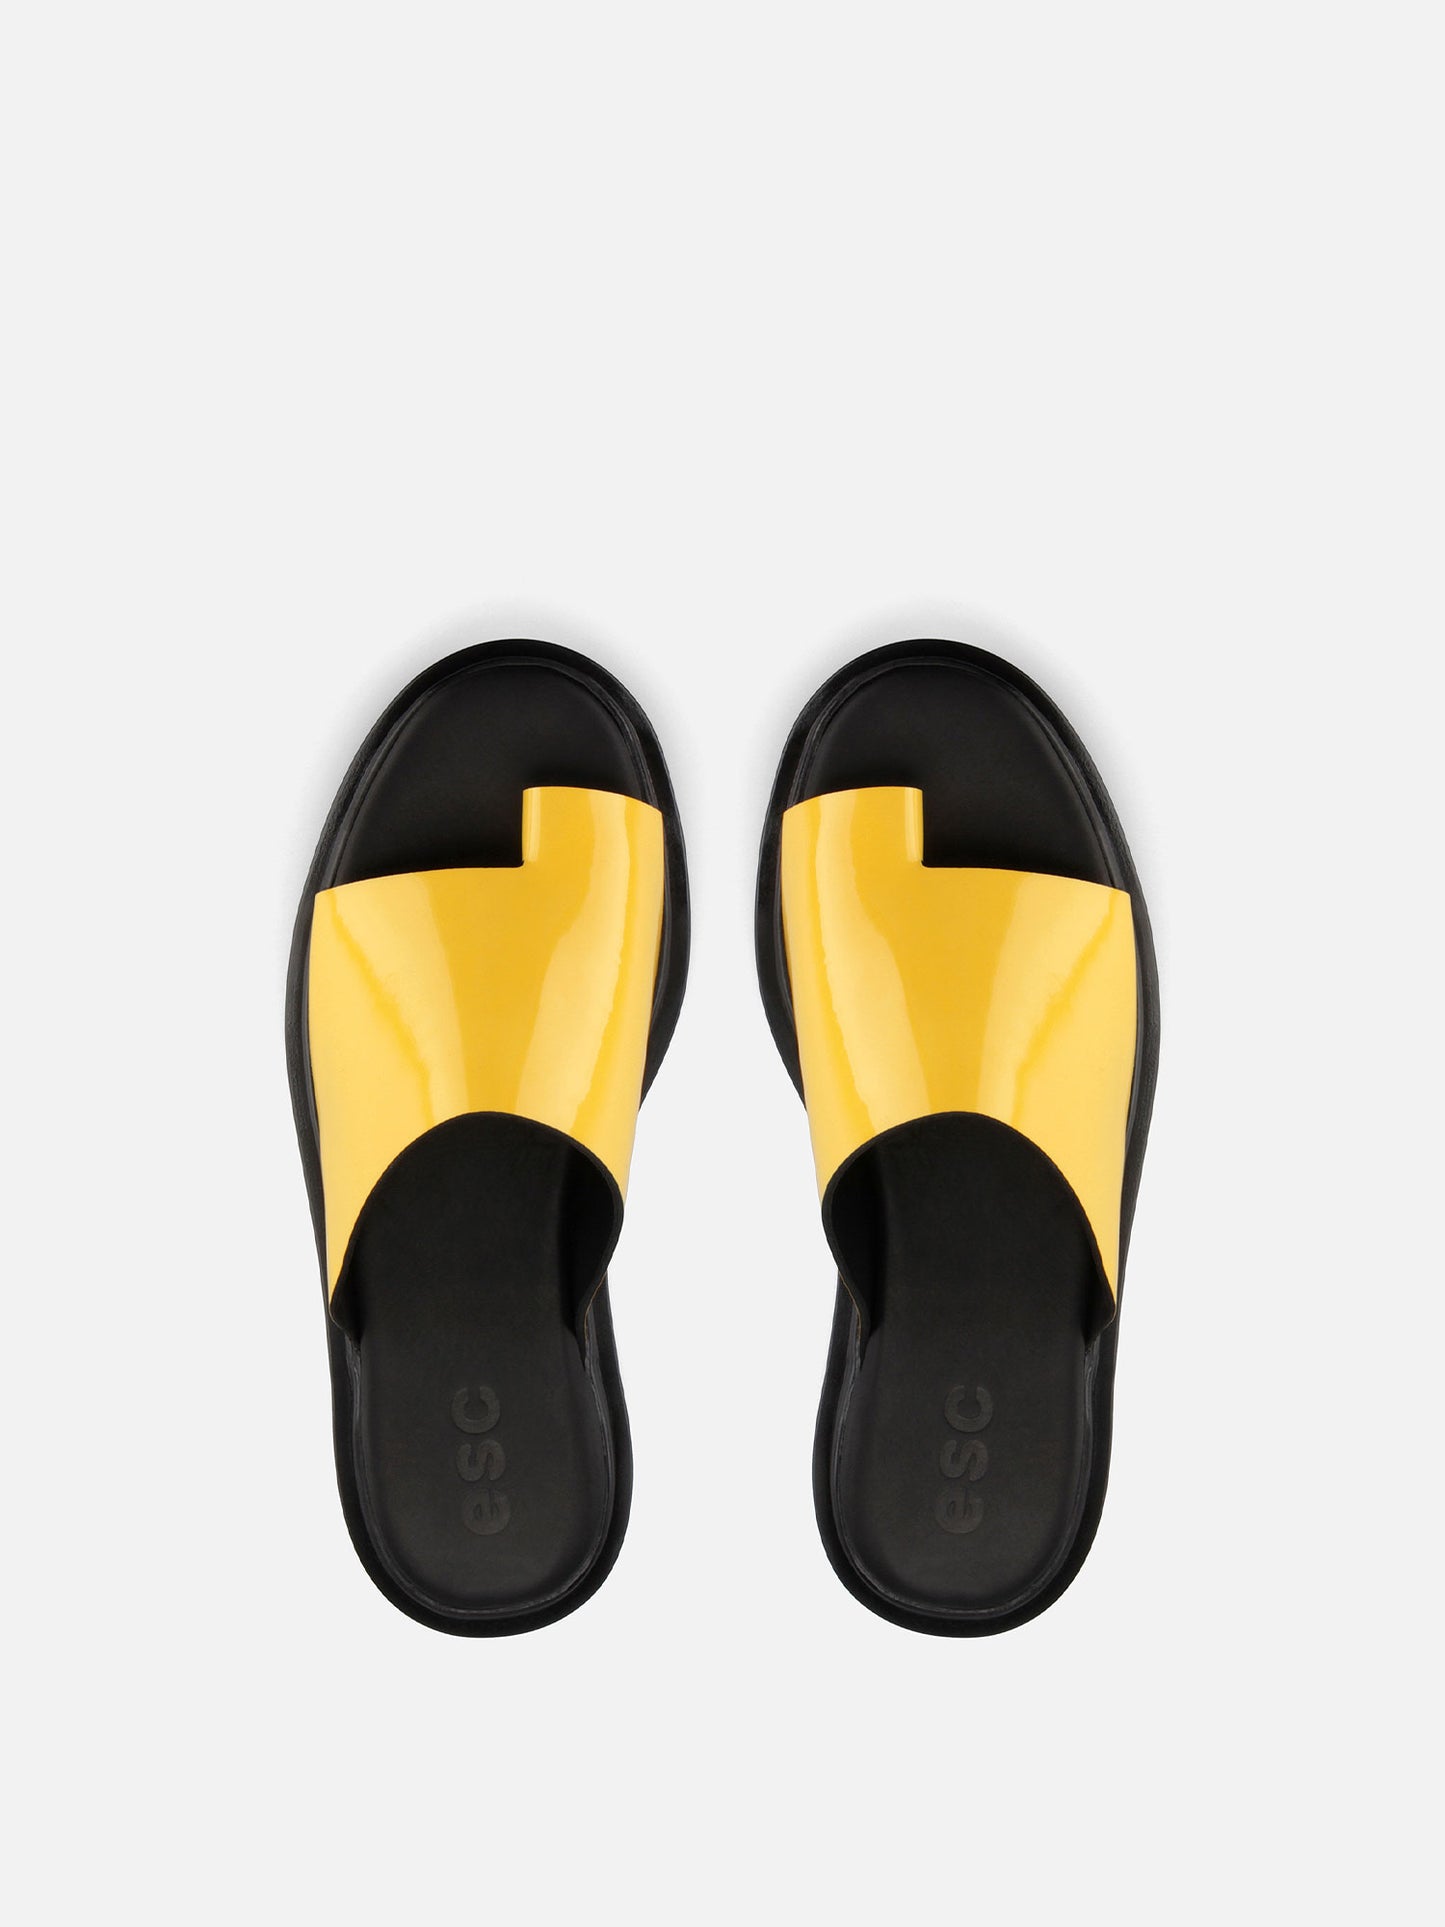 JOY Plataform Sandals - Yellow